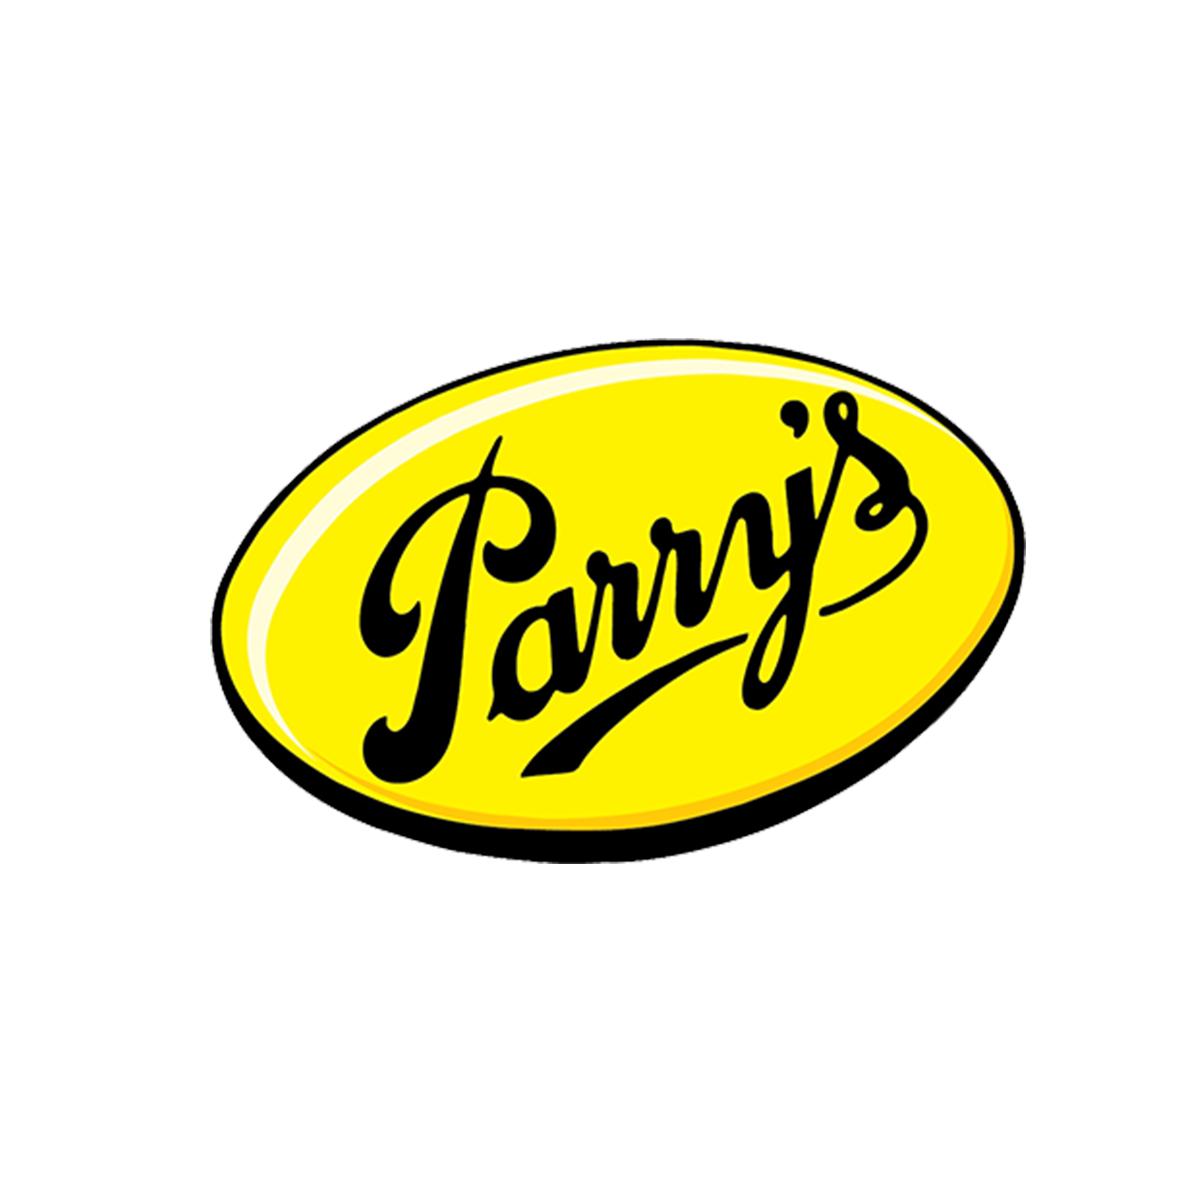 Parrys